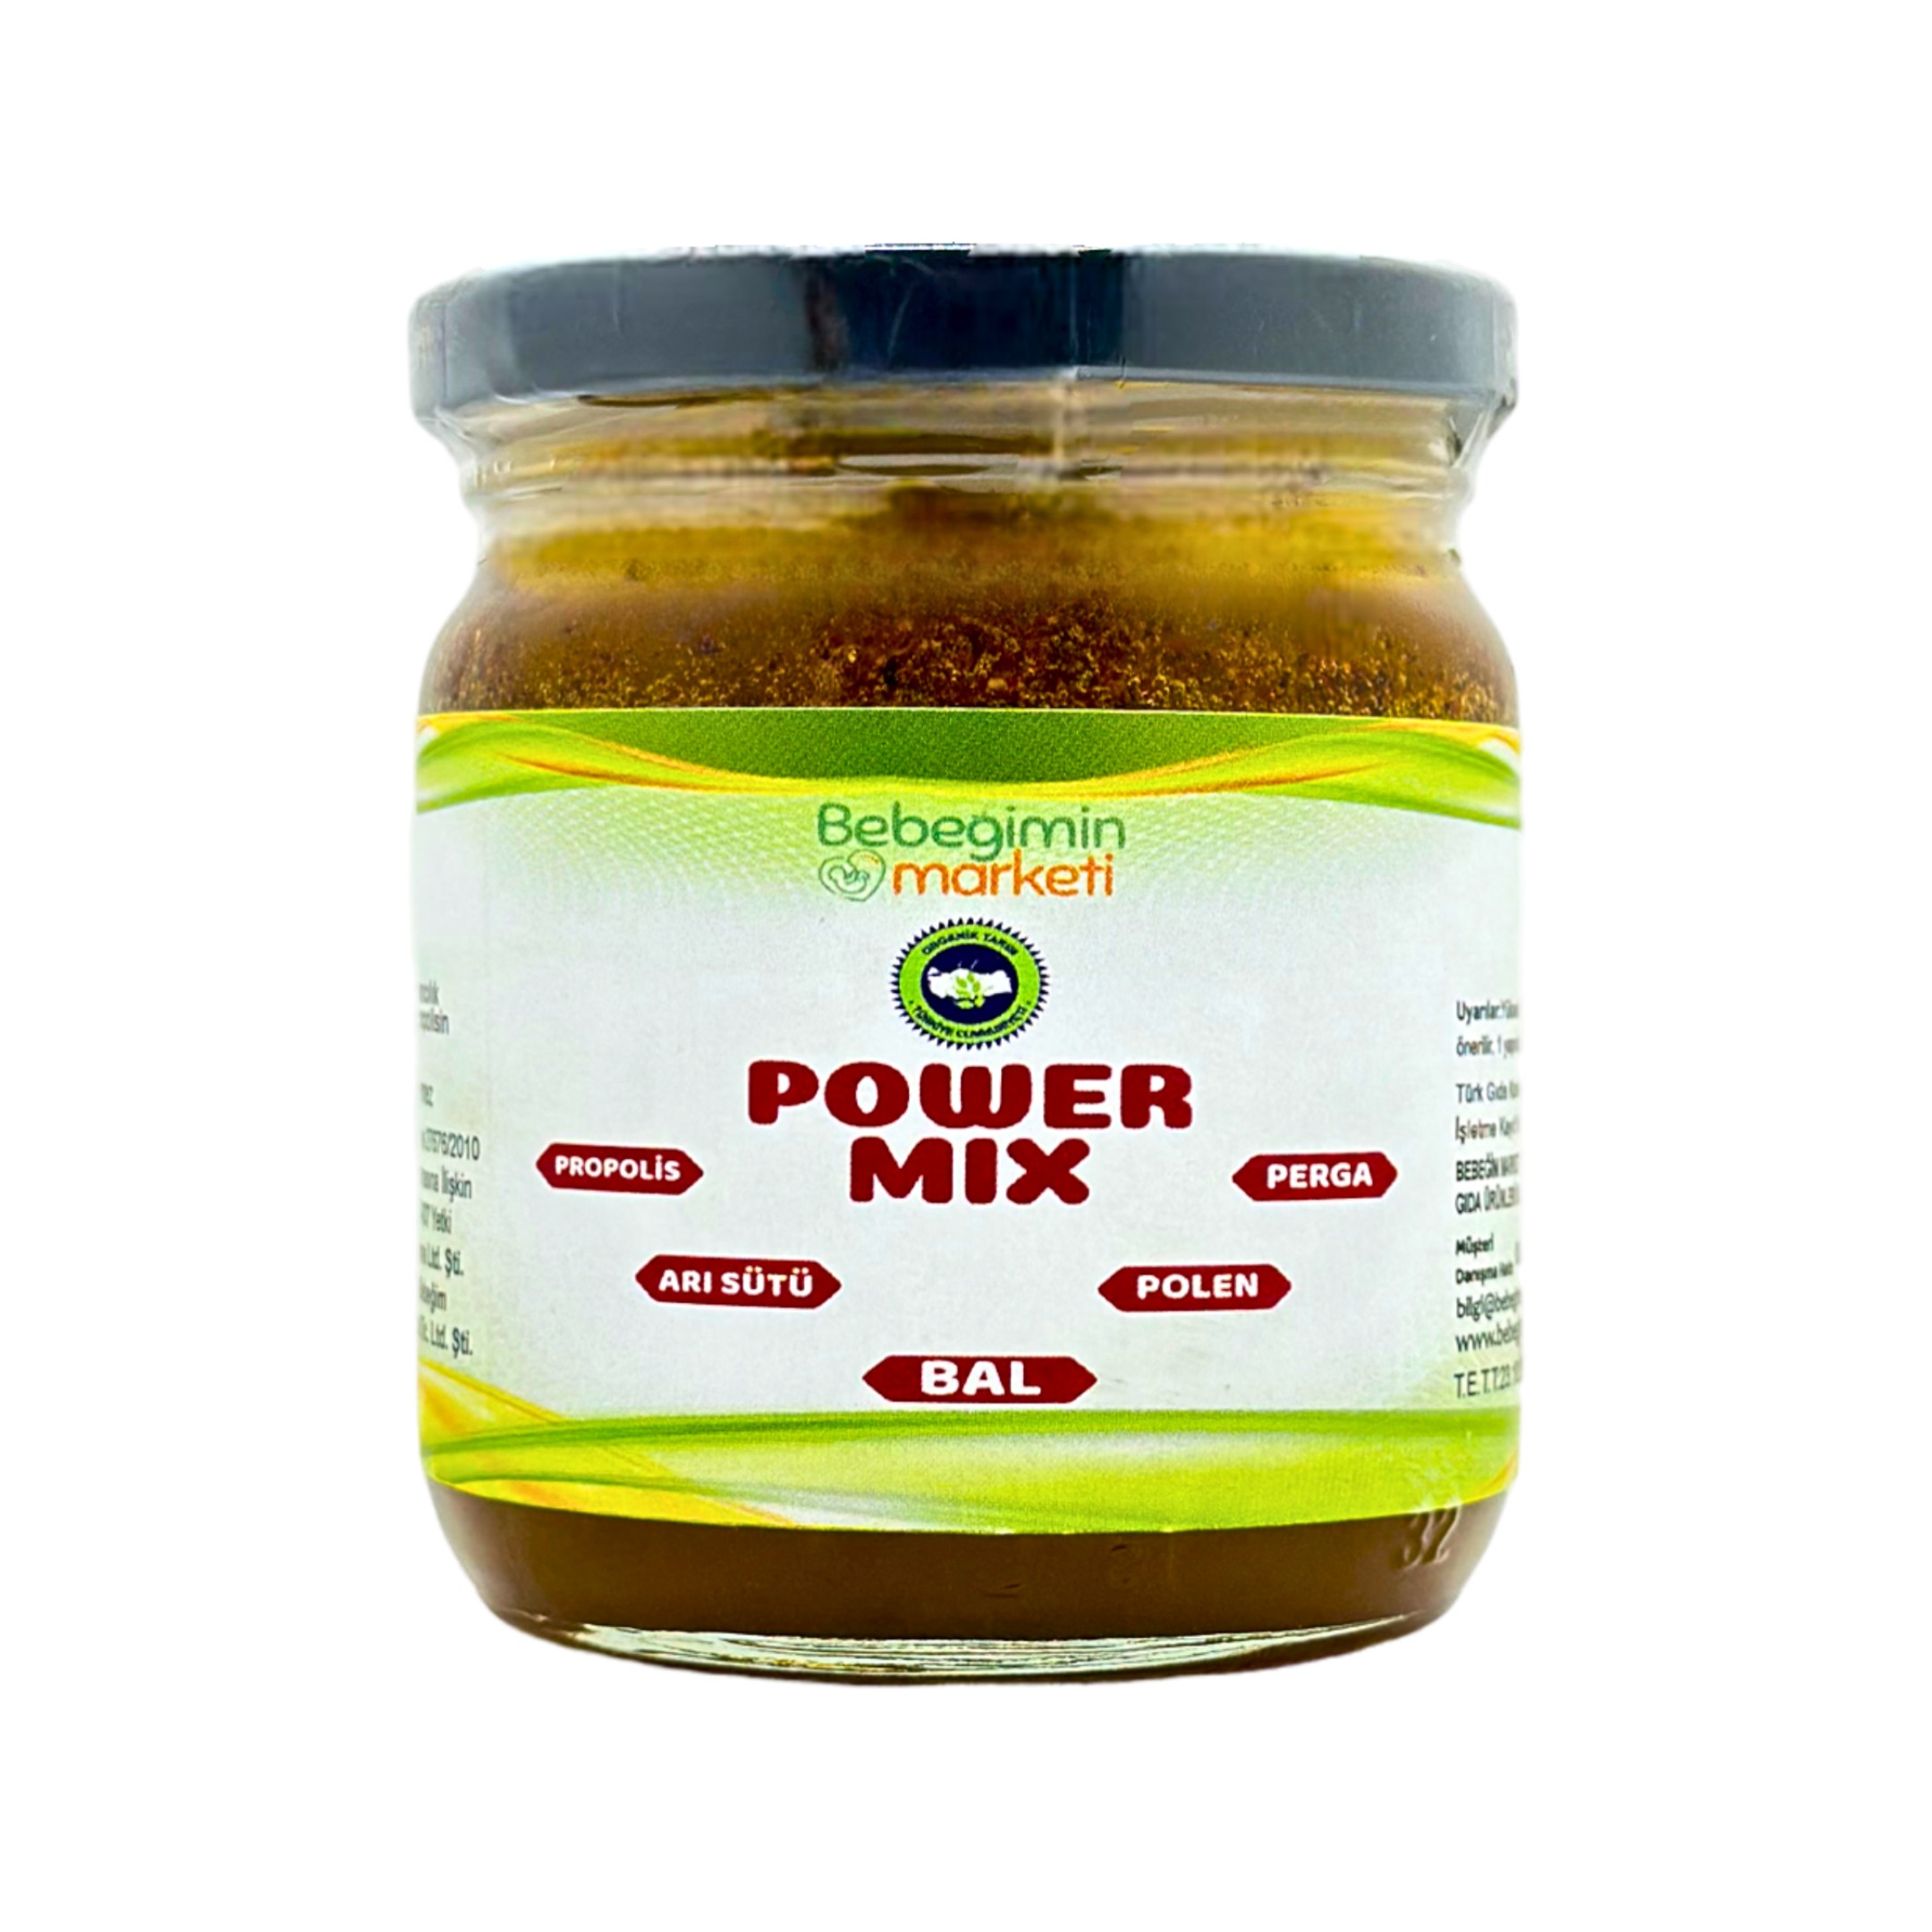 Power Mix 5'li  Güçlü Karışım   (Bal+propolis+arı sütü+polen+arı ekmeği)